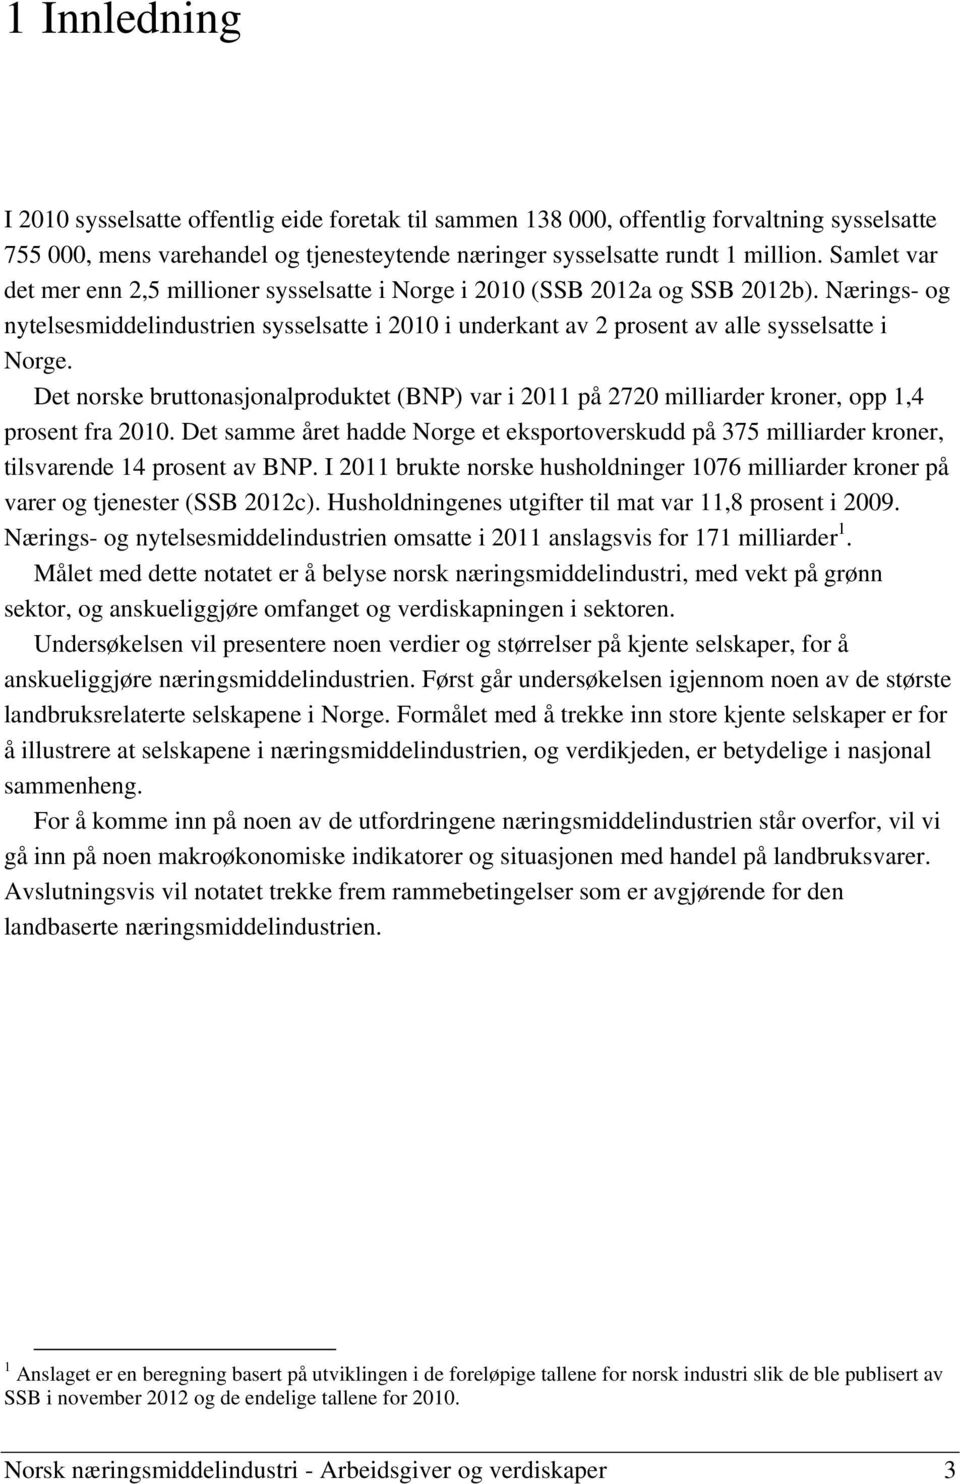 Det norske bruttonasjonalproduktet (BNP) var i 2011 på 2720 milliarder kroner, opp 1,4 prosent fra 2010.